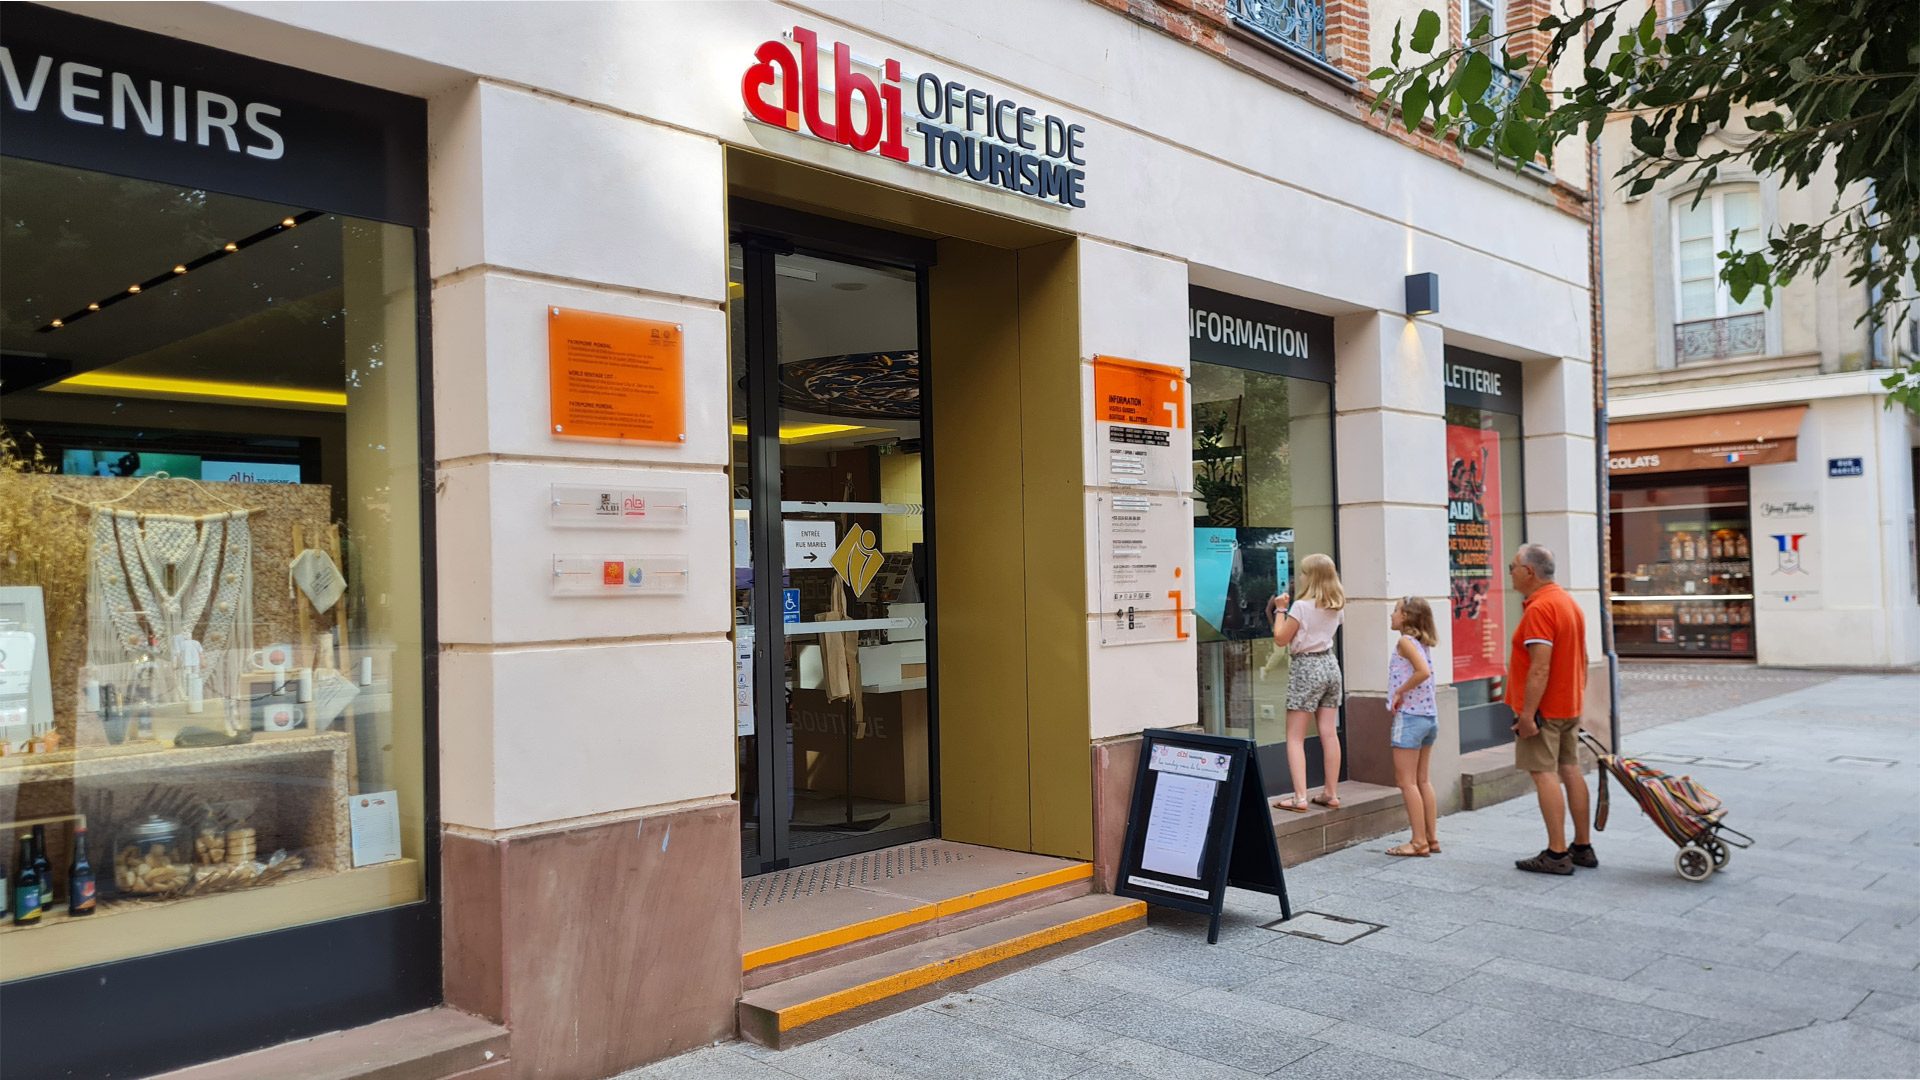 Expert en destinació a l'Oficina de Turisme d'Albi: assessorament, venda d'entrades, visites guiades, botiga